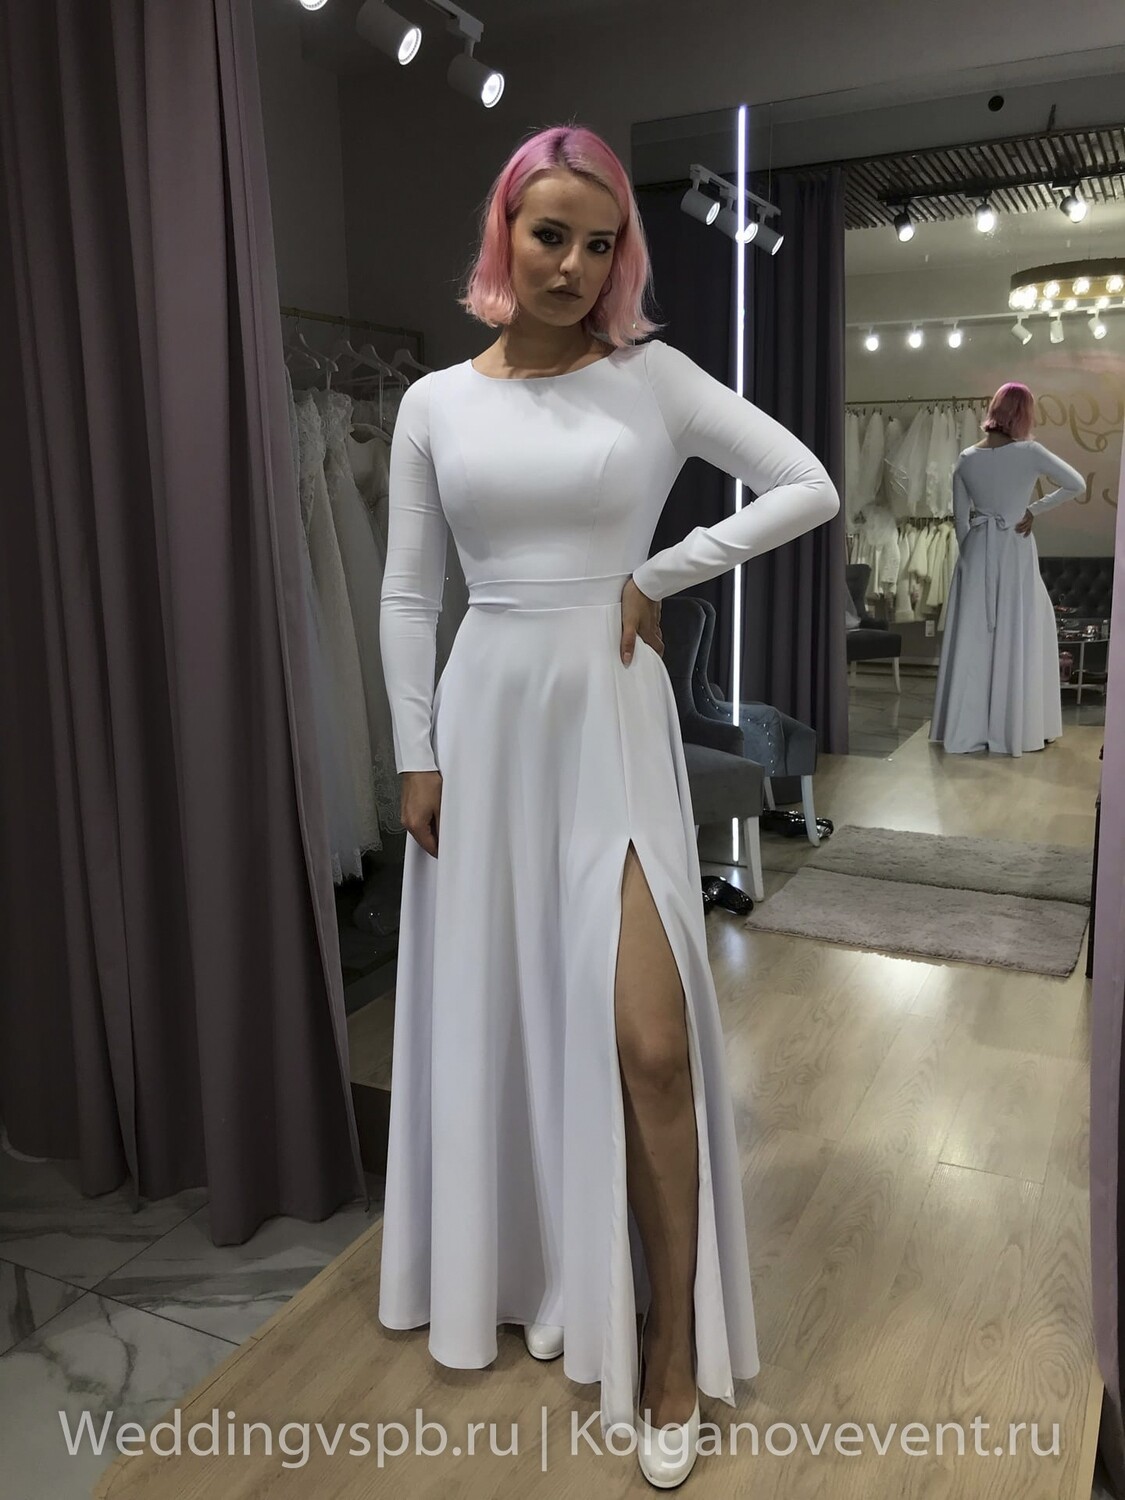 Свадебное платье "Джилиан"  (44-46 размер)